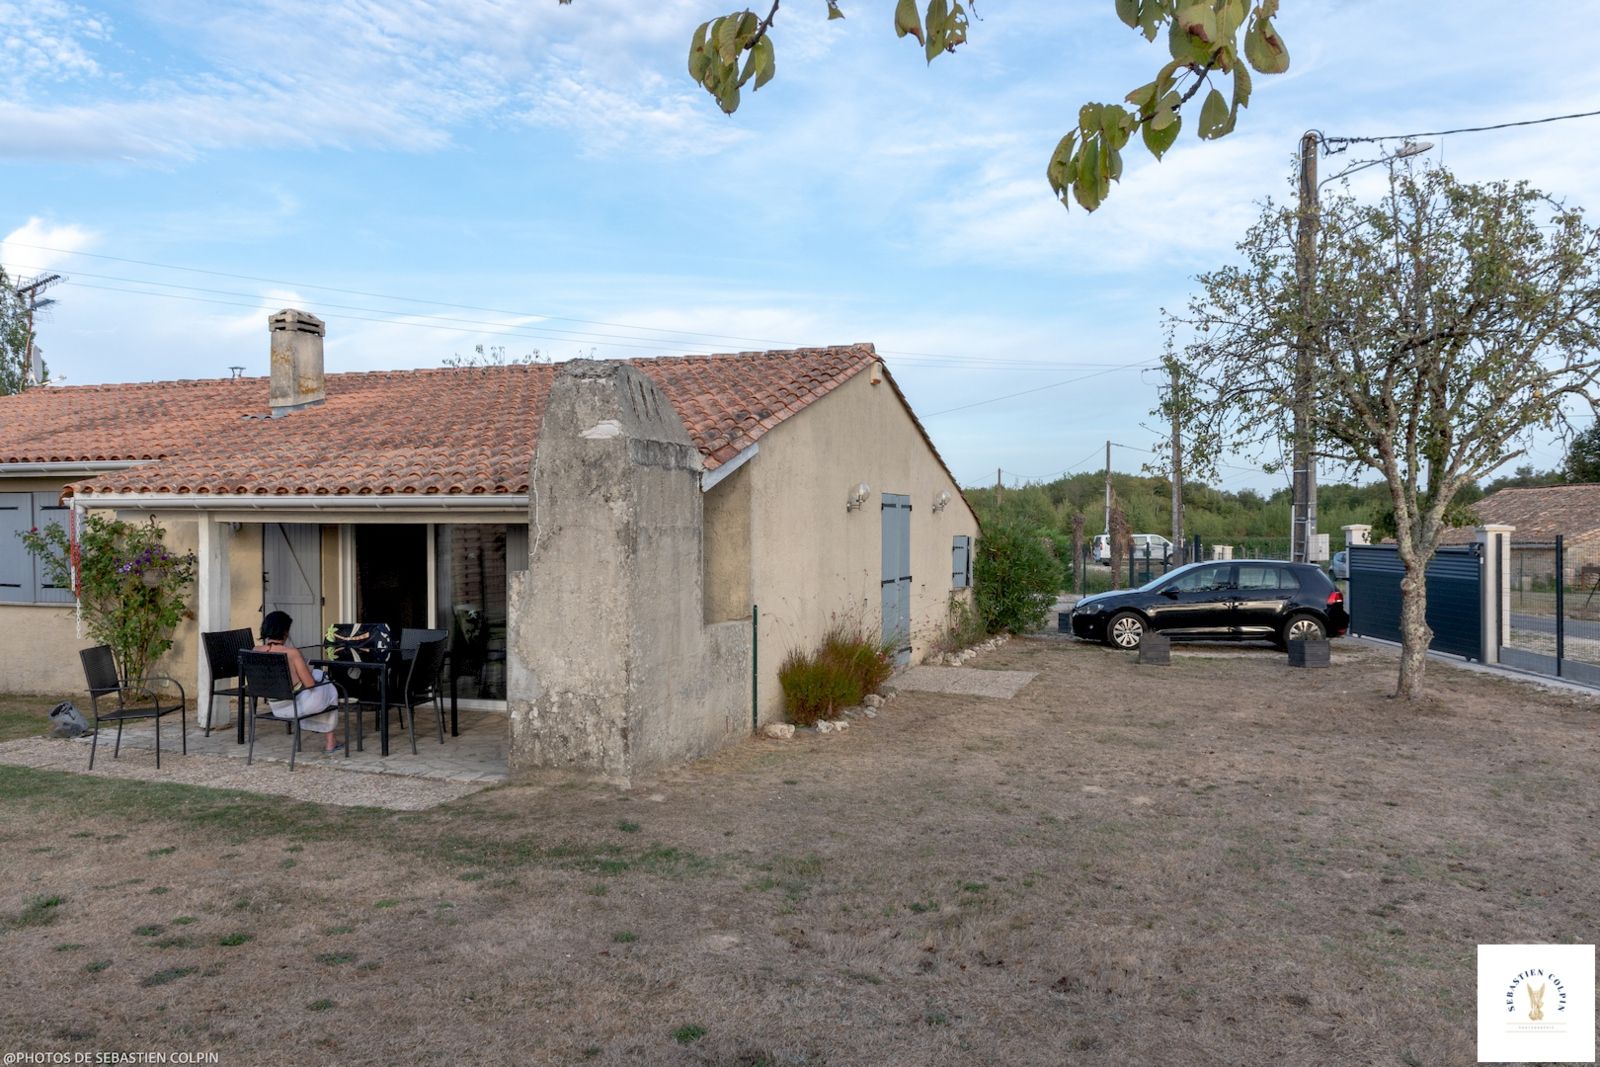 Saint-Genès de Fronsac, un village de Gironde au cœur des vignes